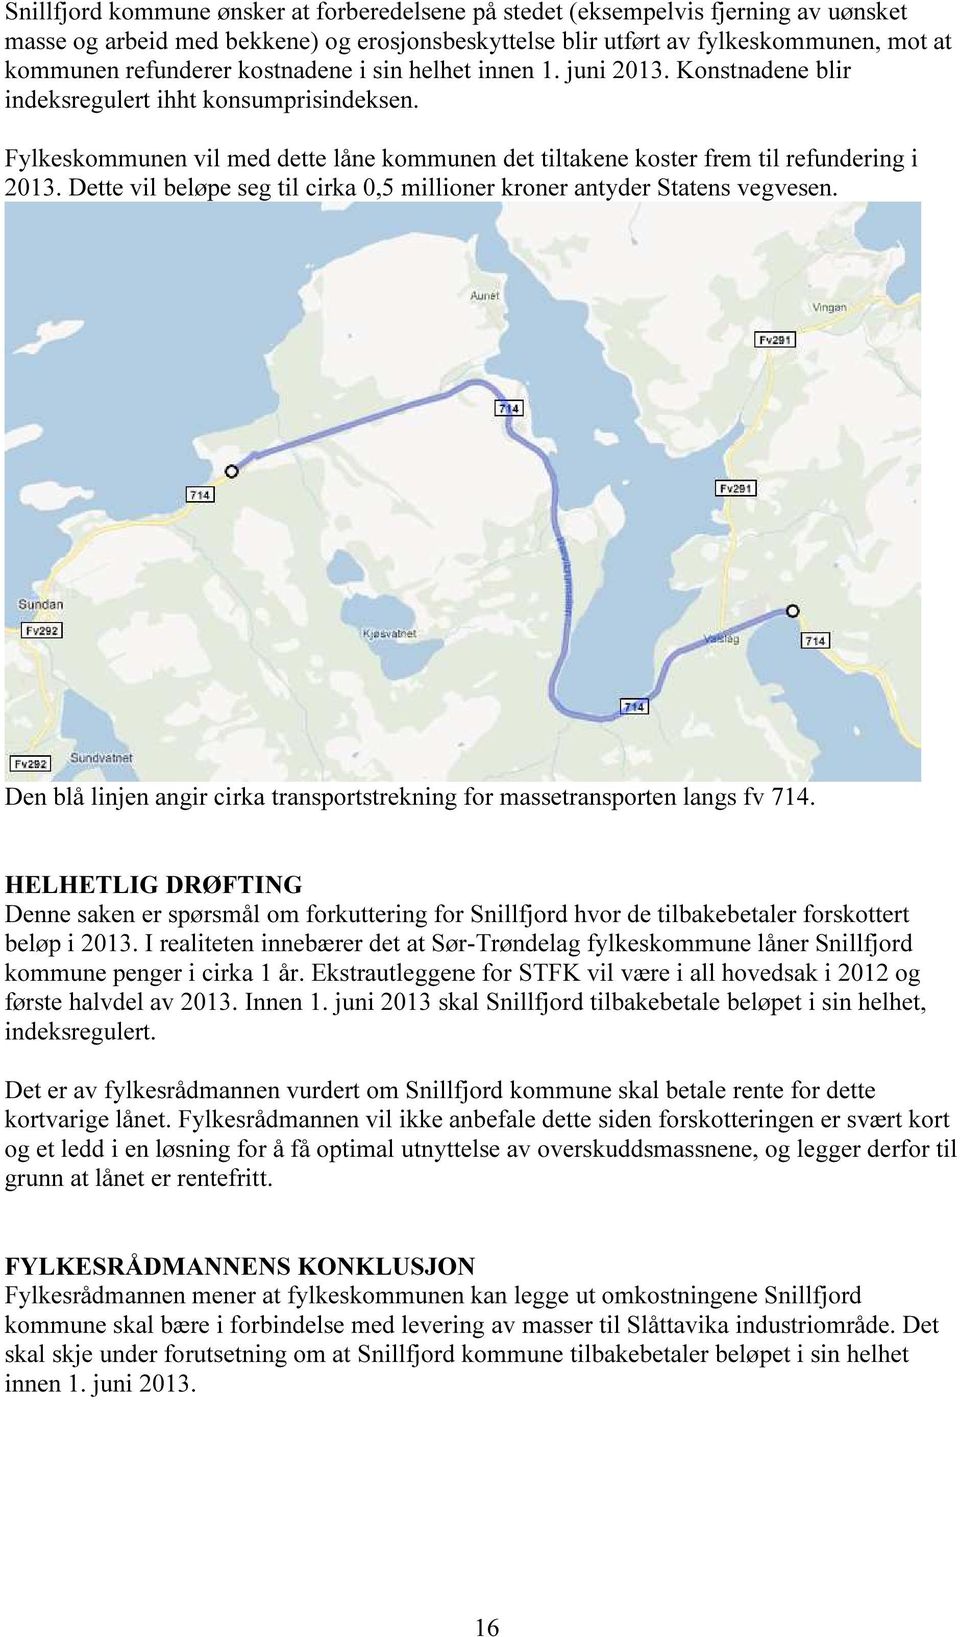 Dette vil beløpe seg til cirka 0,5 millioner kroner antyder Statens vegvesen. Den blå linjen angir cirka transportstrekning for massetransporten langs fv 714.